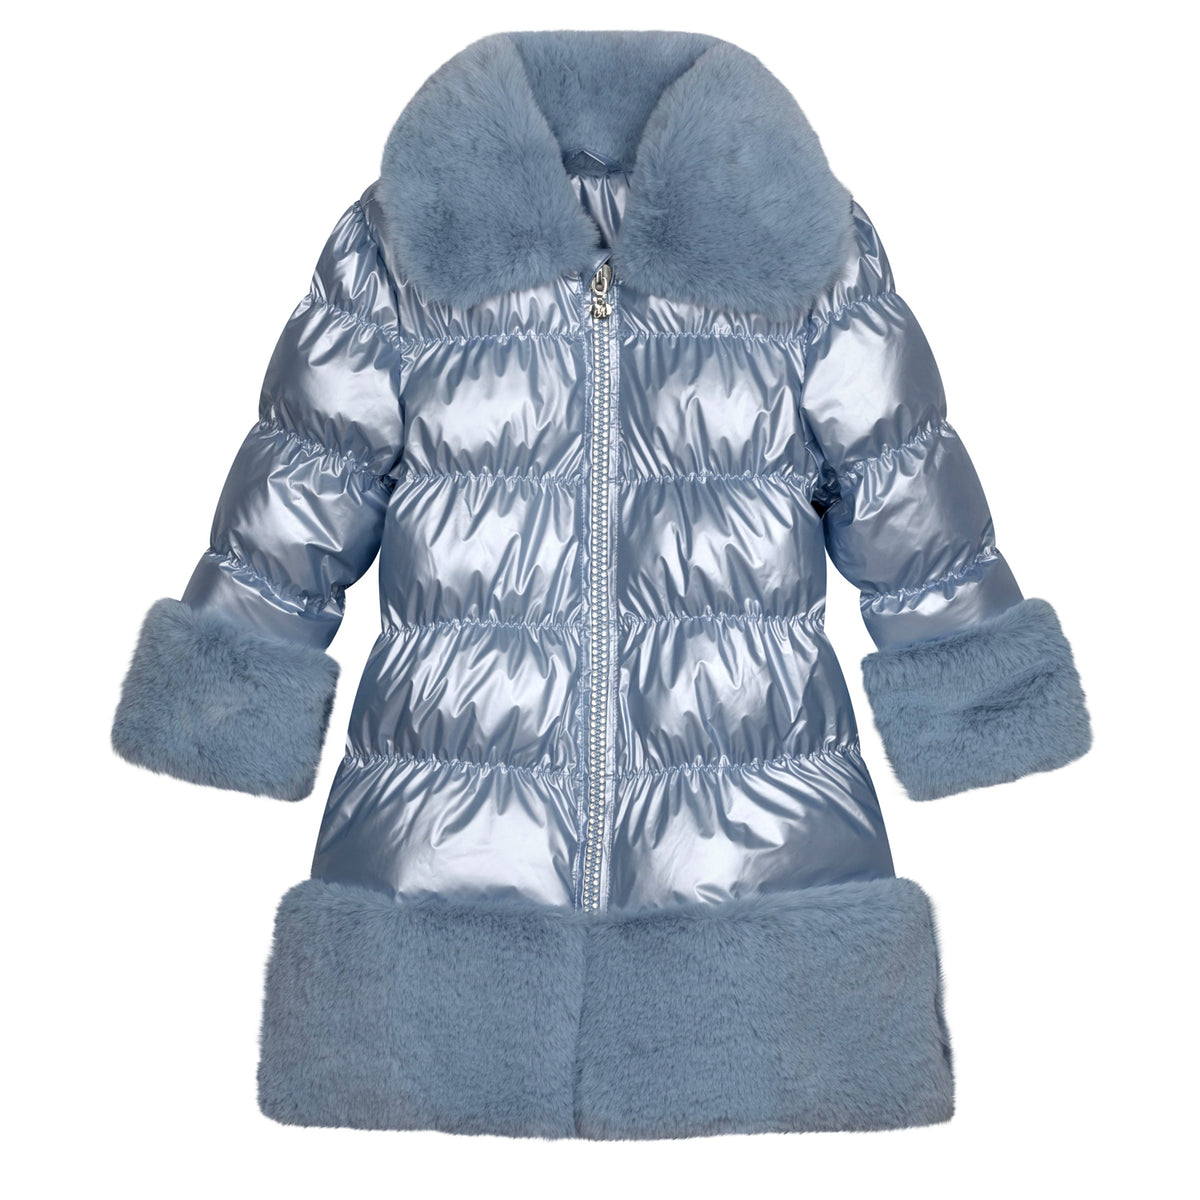 A Dee Blue 'Sarah' Faux Fur Trim Coat